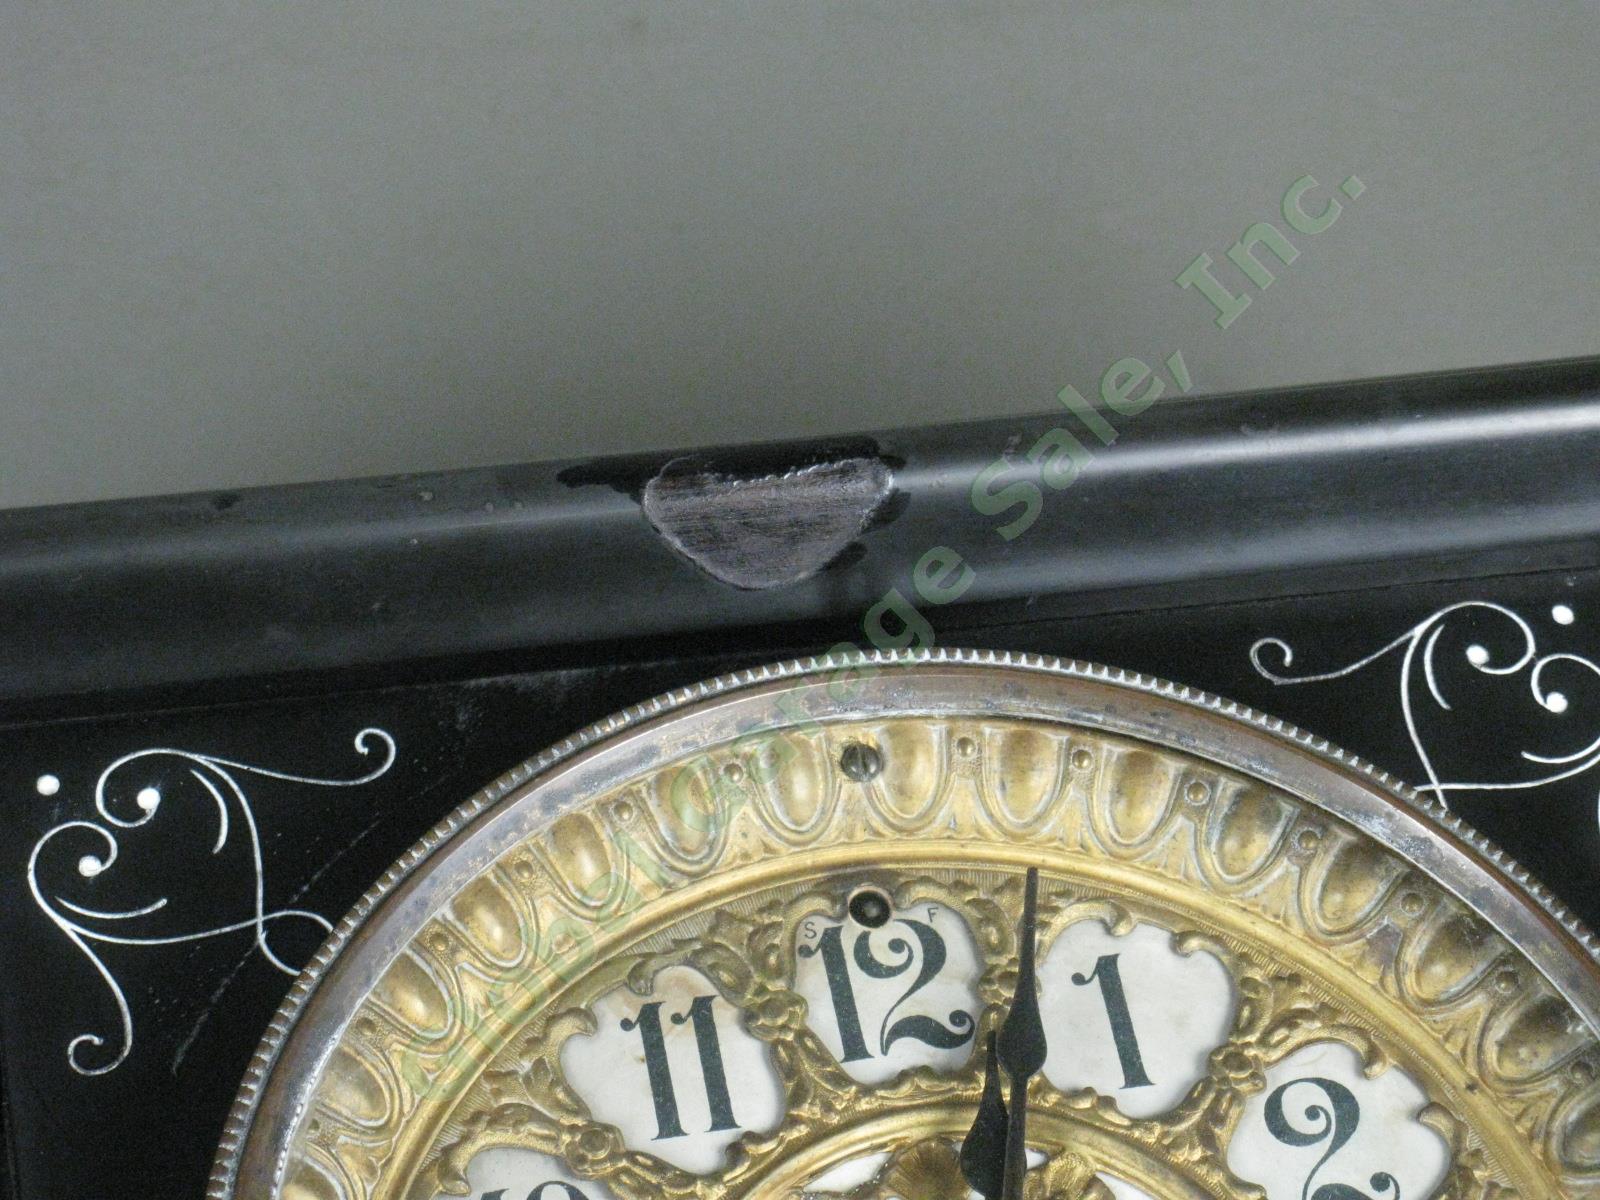 Rare Antique Seth Thomas Green Adamantine Mantle Pendulum Clock 3 5/8 Movement 9